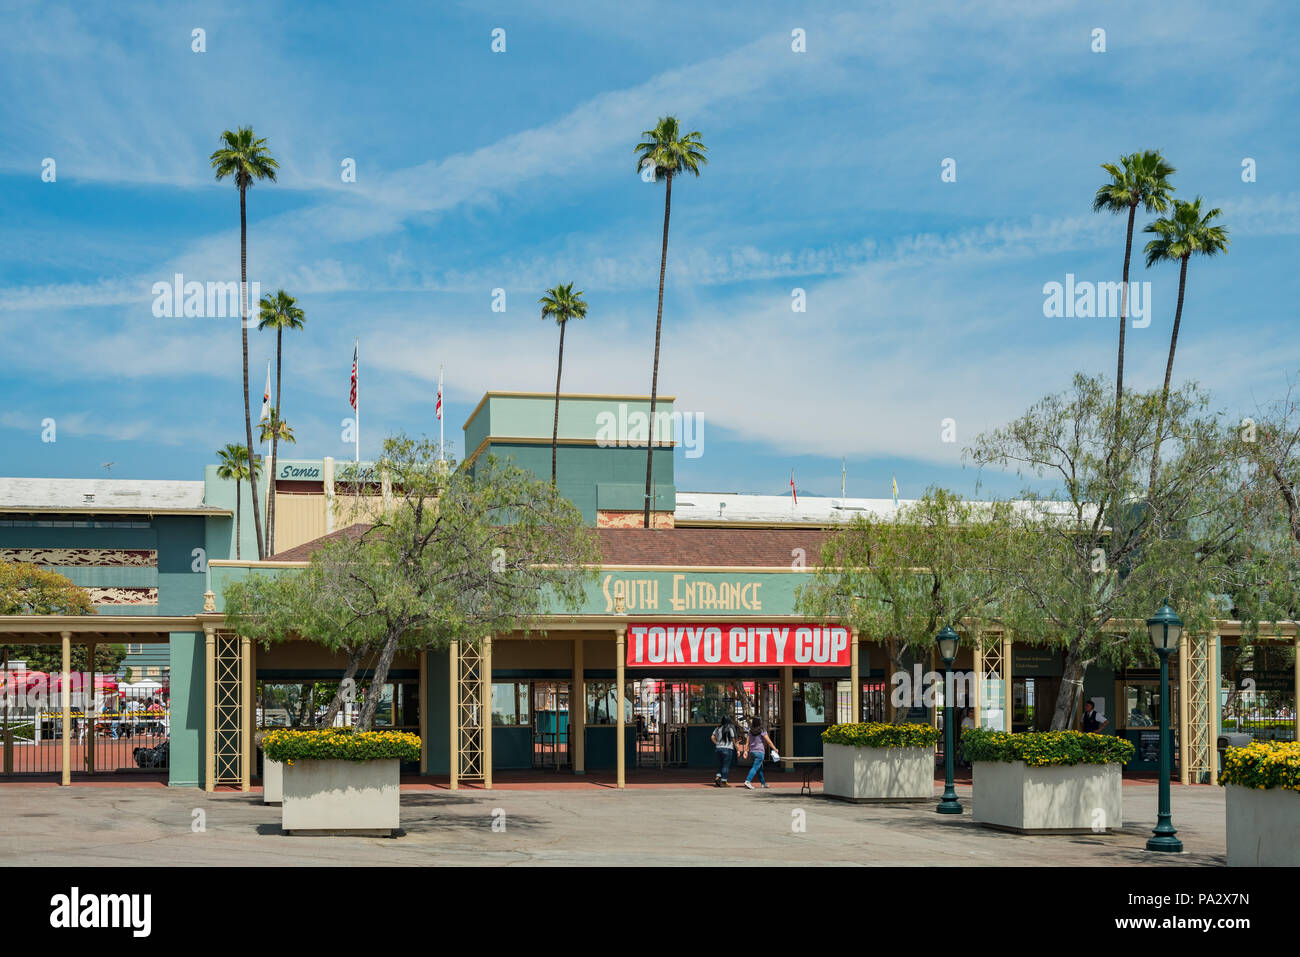 Los Angeles, 8 de abr de: La entrada de Santa Anita Park el 8 de abril de 2018, en Los Angeles, California Foto de stock